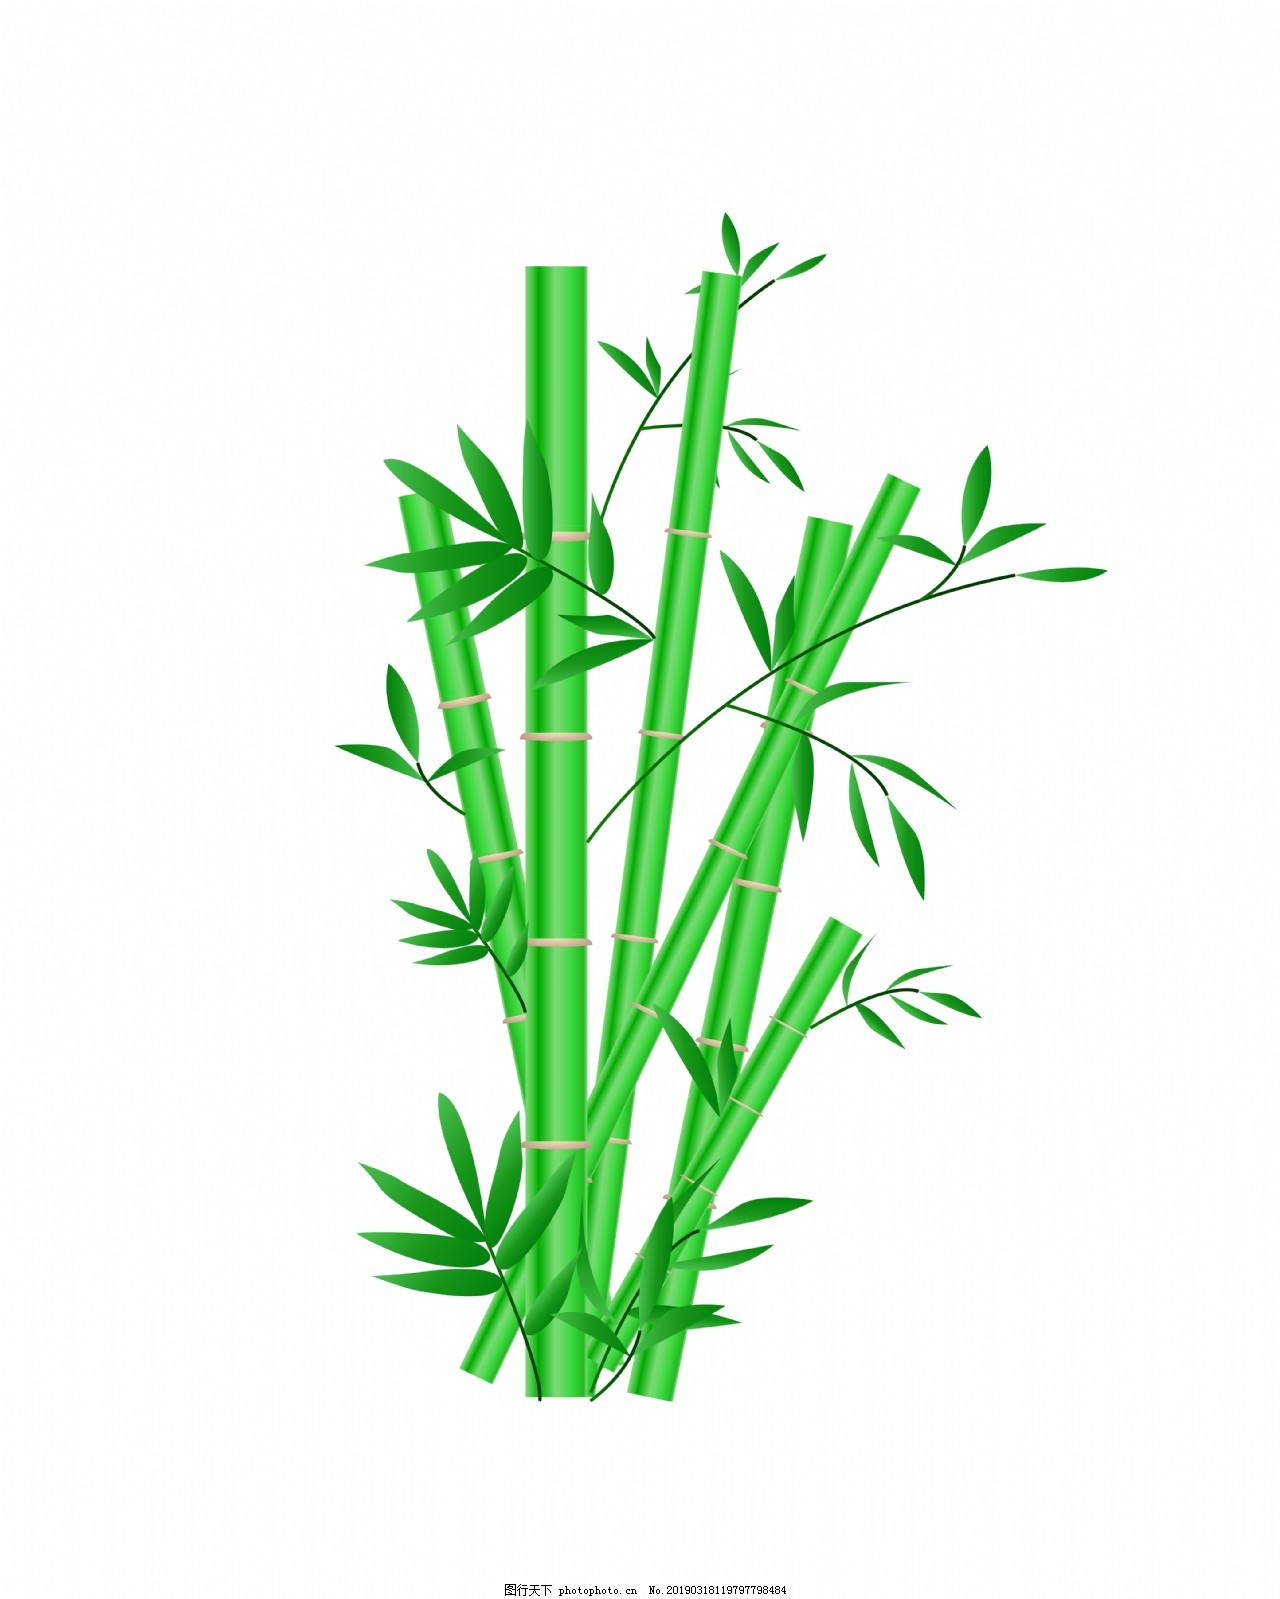 【干货分享】-植物效果图画法